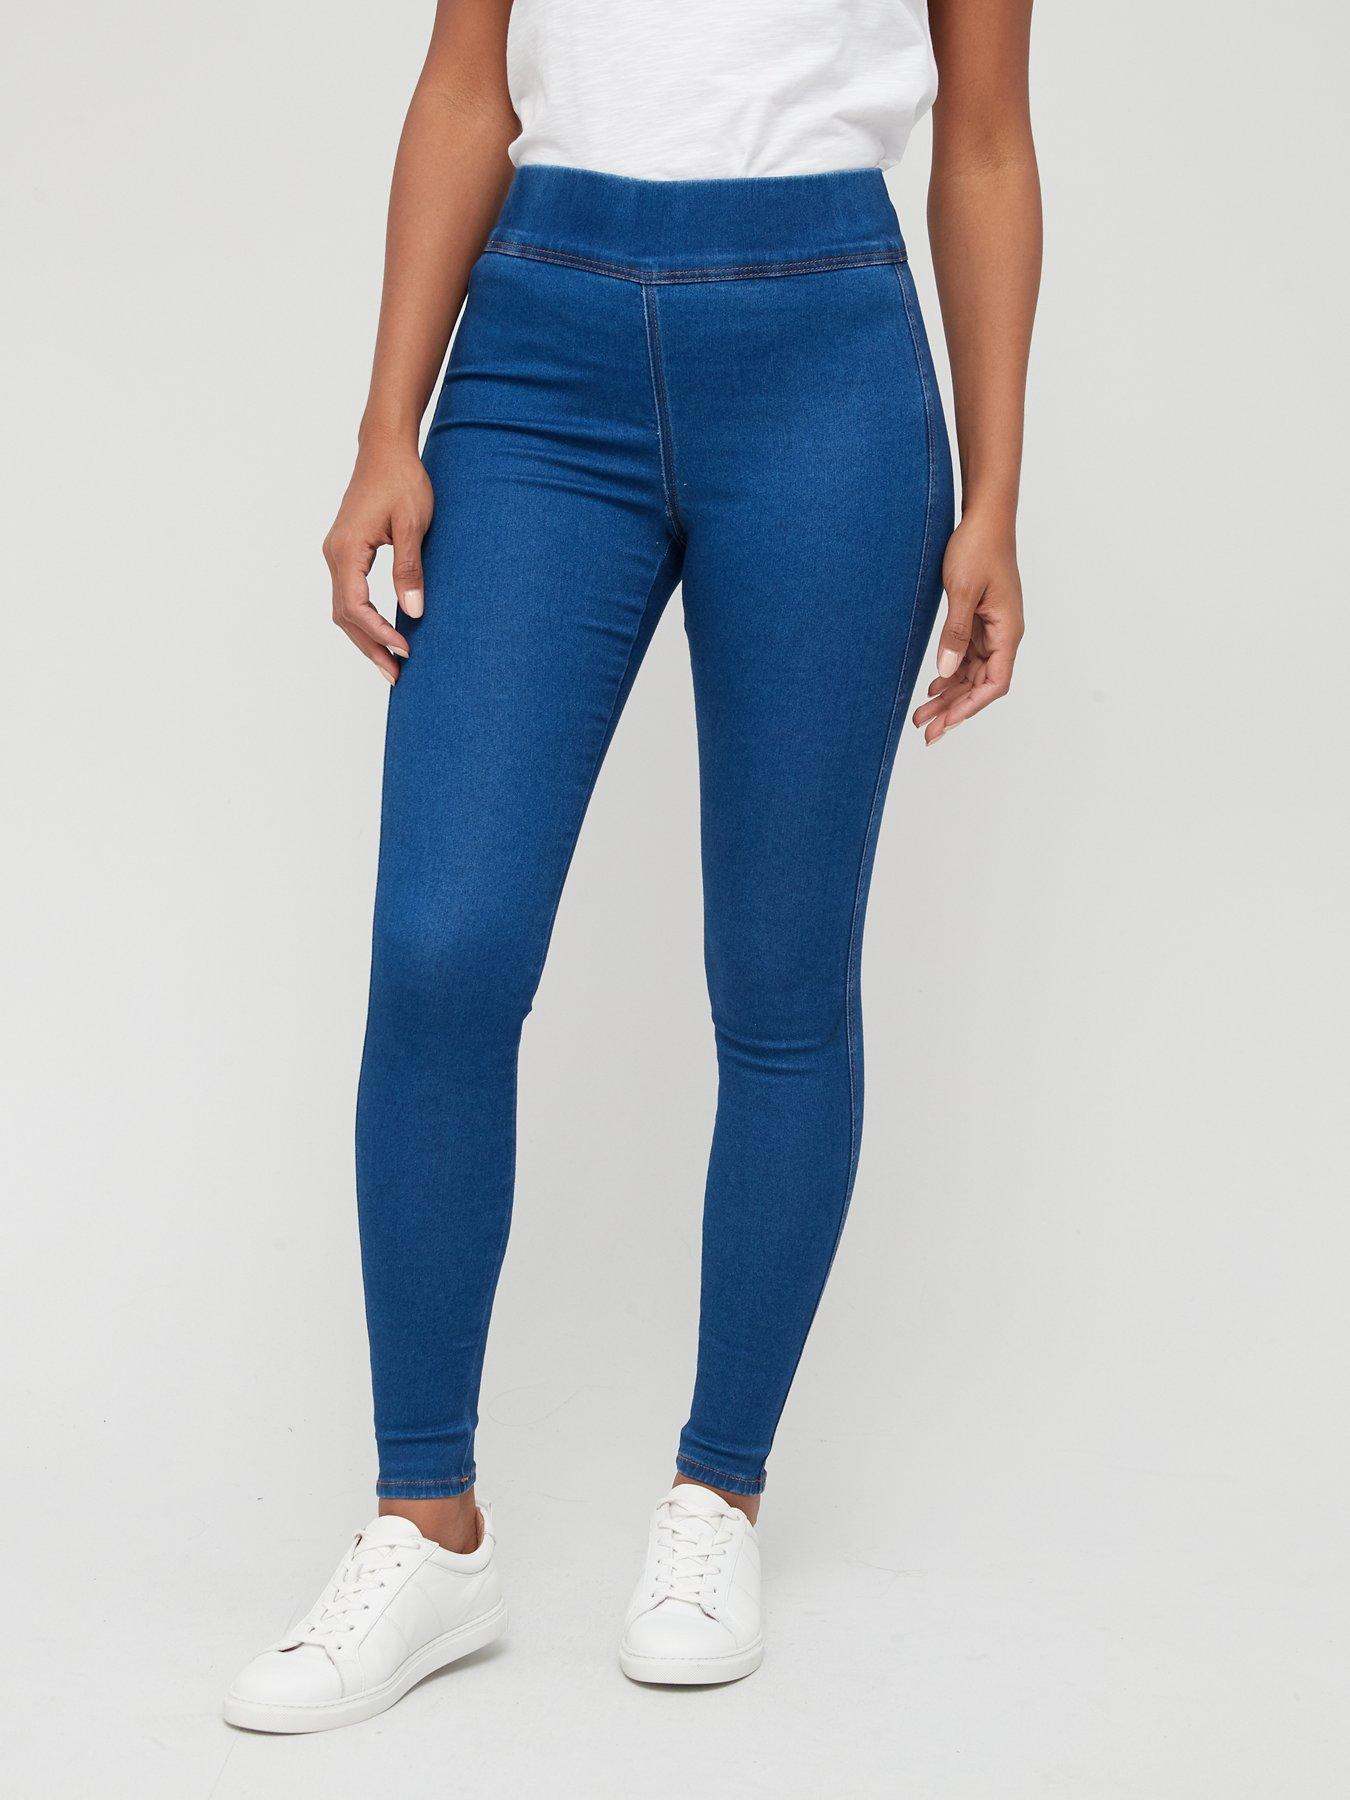 women's gloria vanderbilt amanda jeans